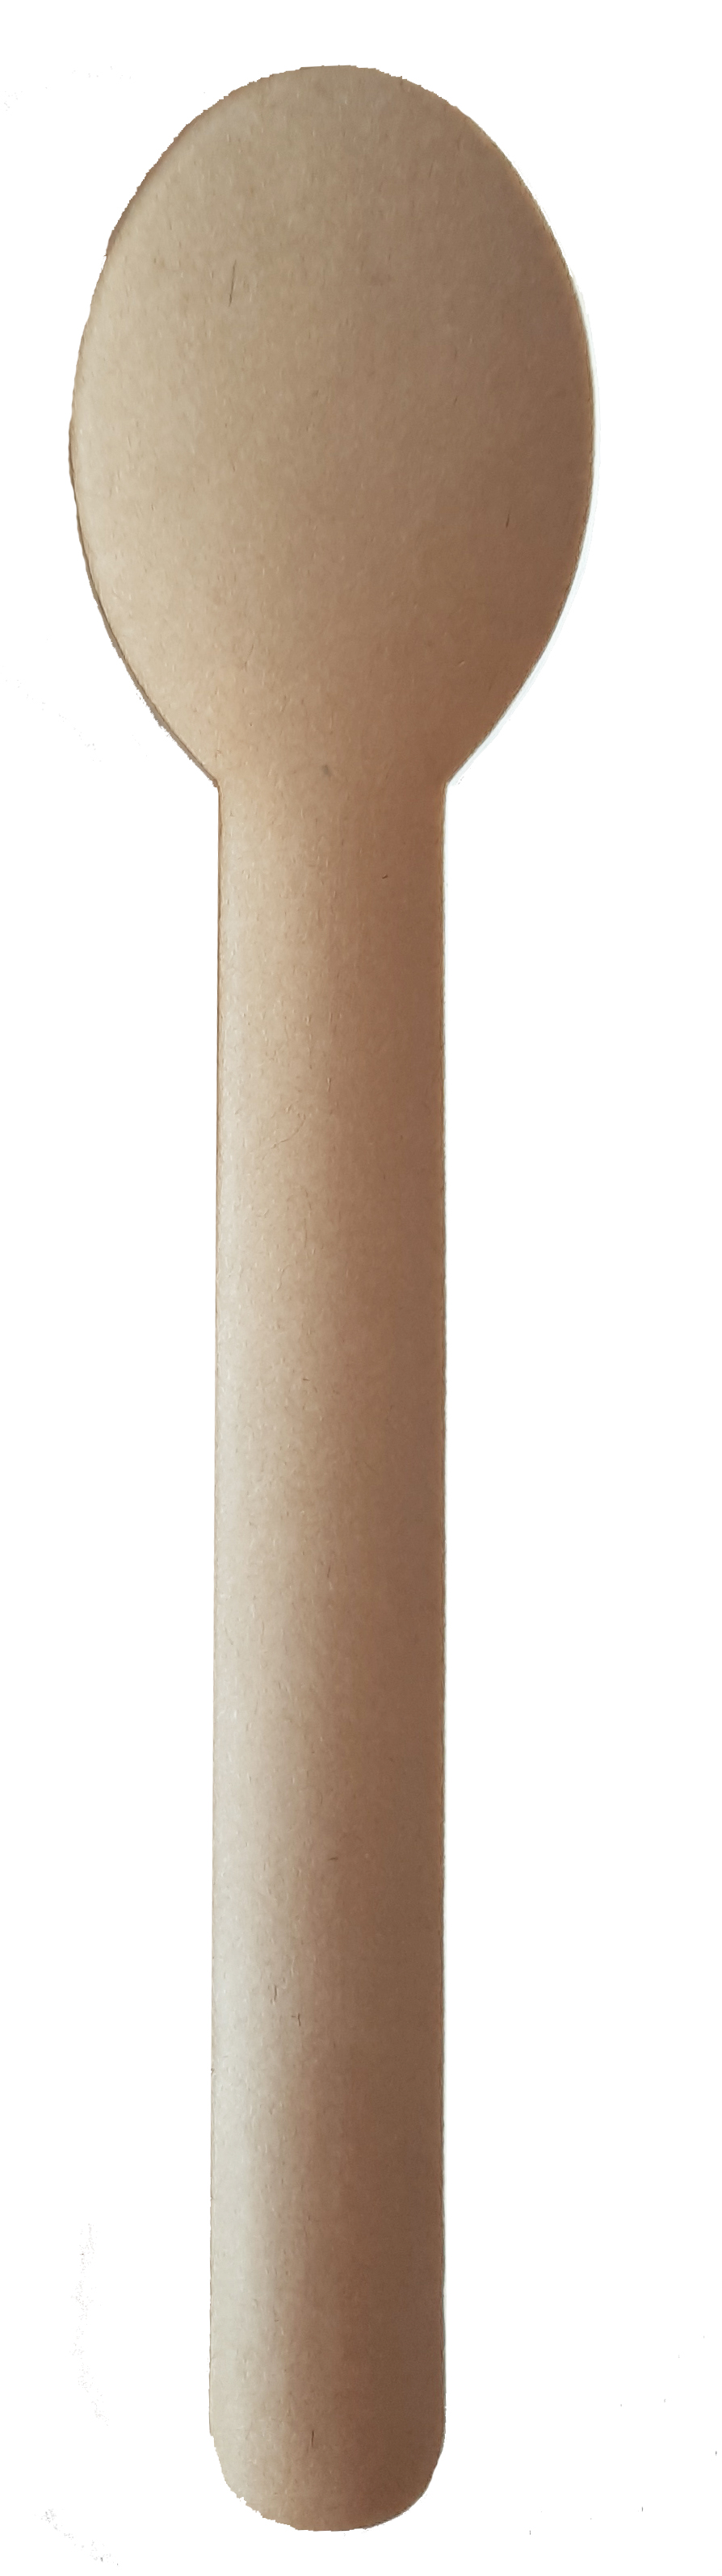 Lepel papier P2P 158mm bruin (pak à 100st)